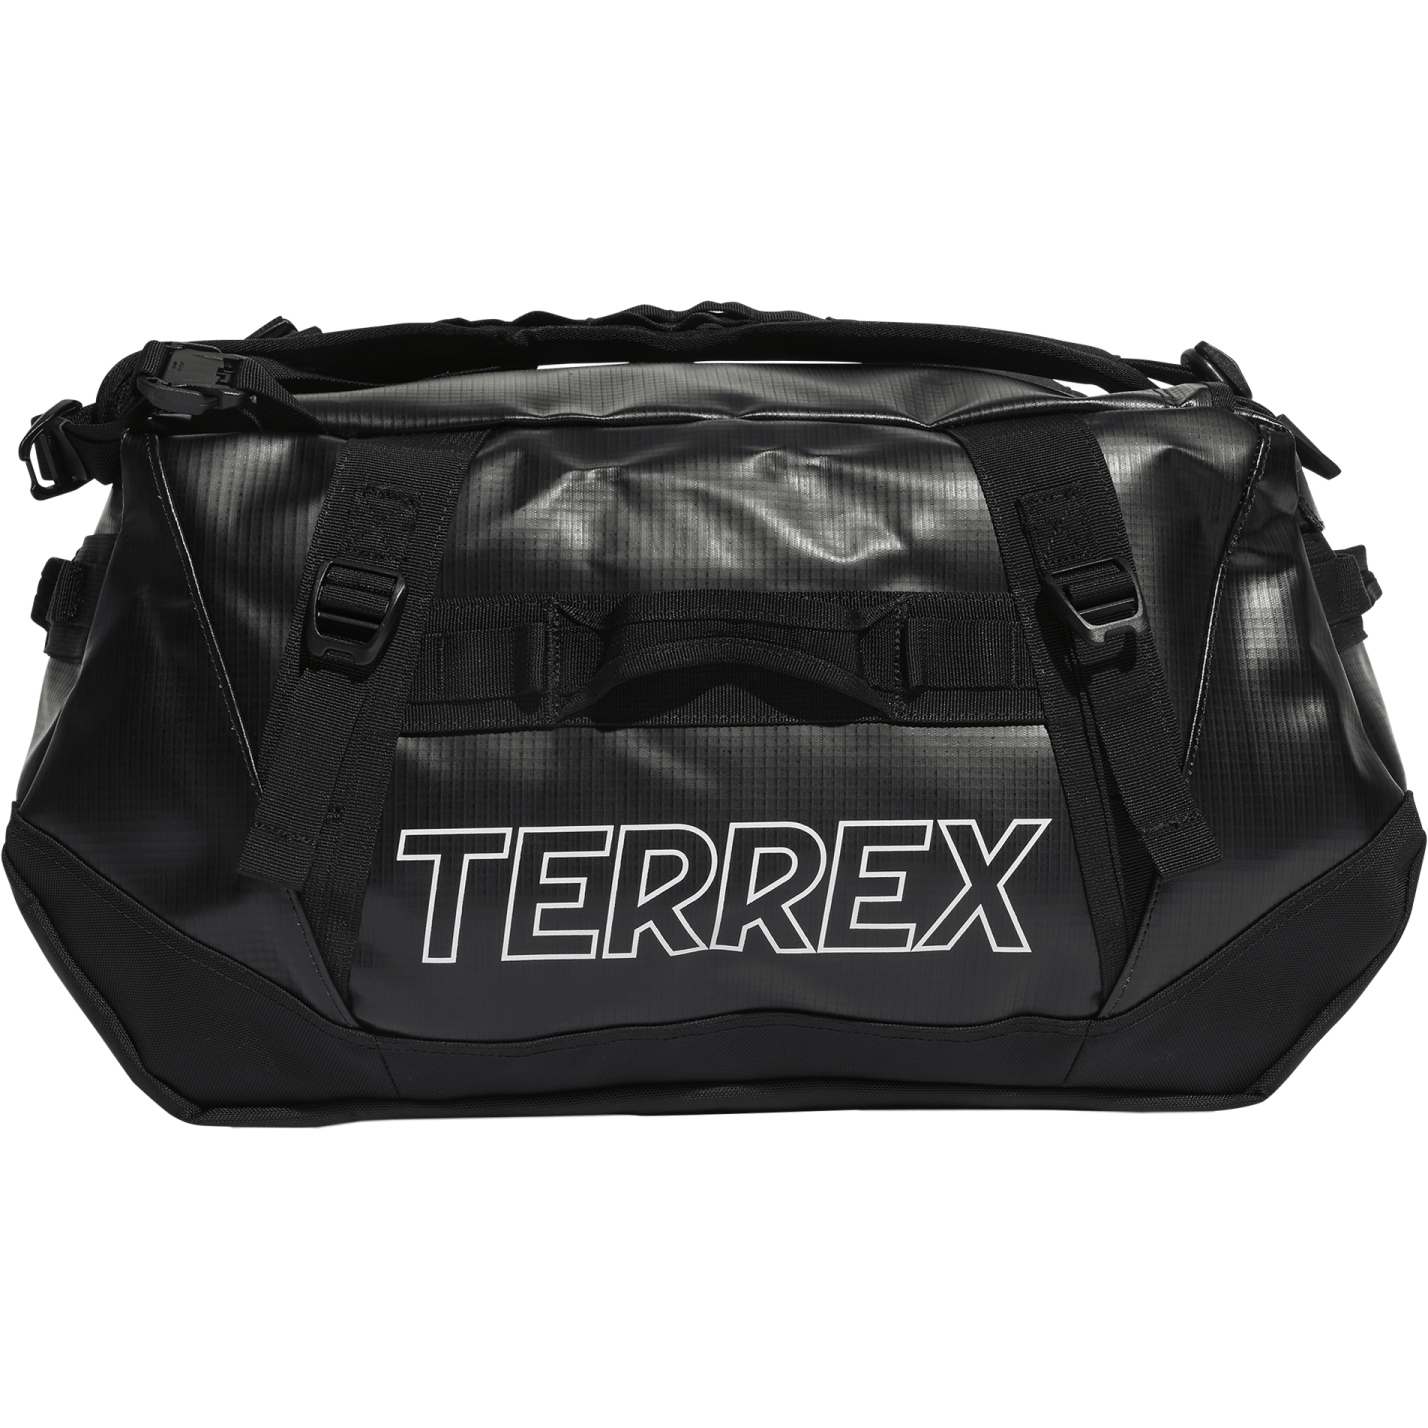 Produktbild von adidas TERREX RAIN.RDY Expedition Duffel Bag S - 50L - schwarz/schwarz/weiß IN8327